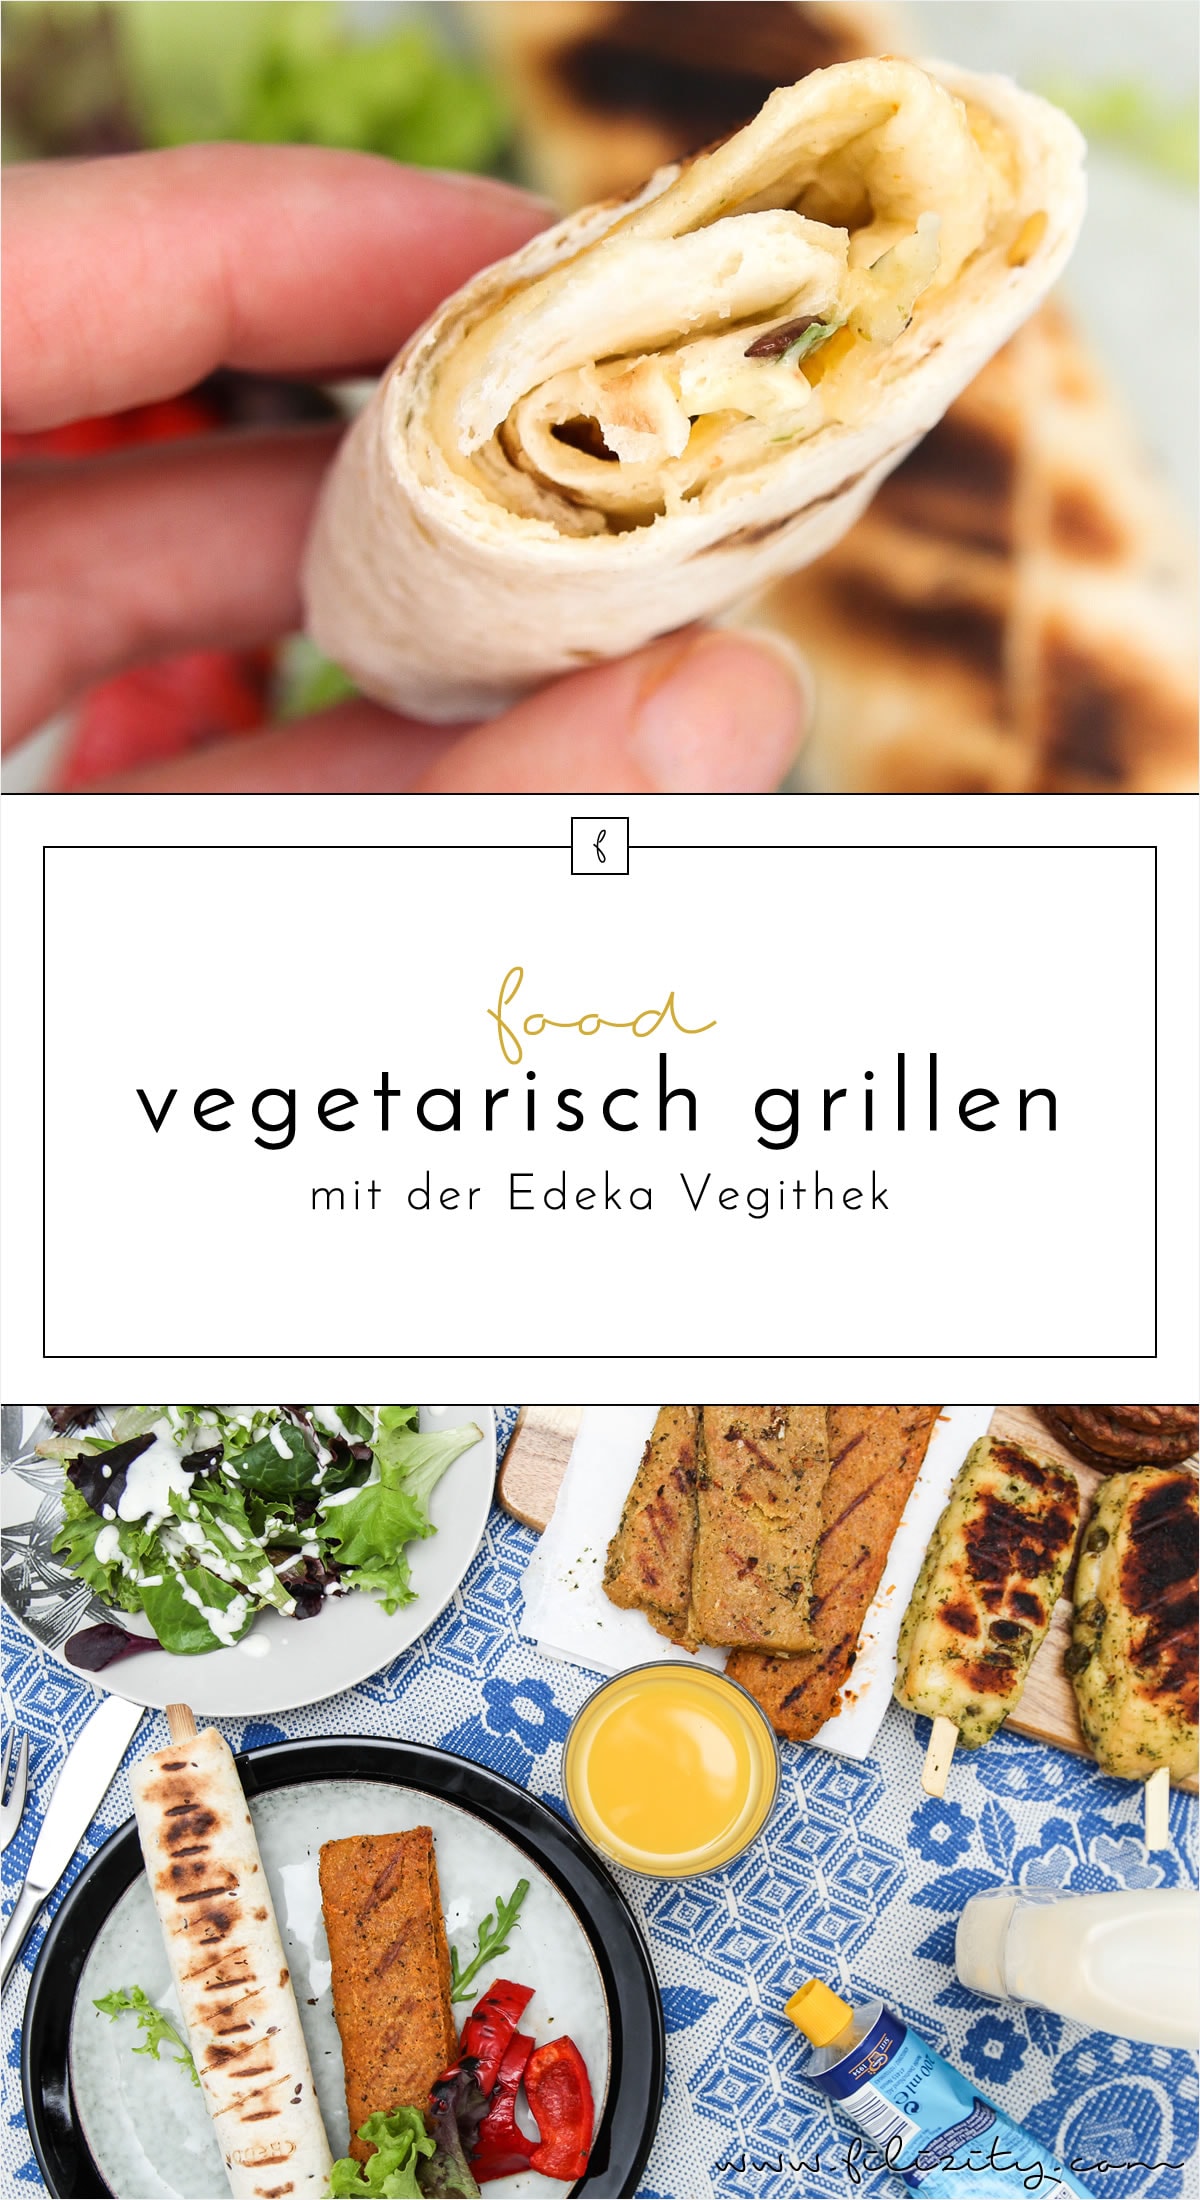 Vegan und vegetarisch grillen mit der Edeka Vegithek